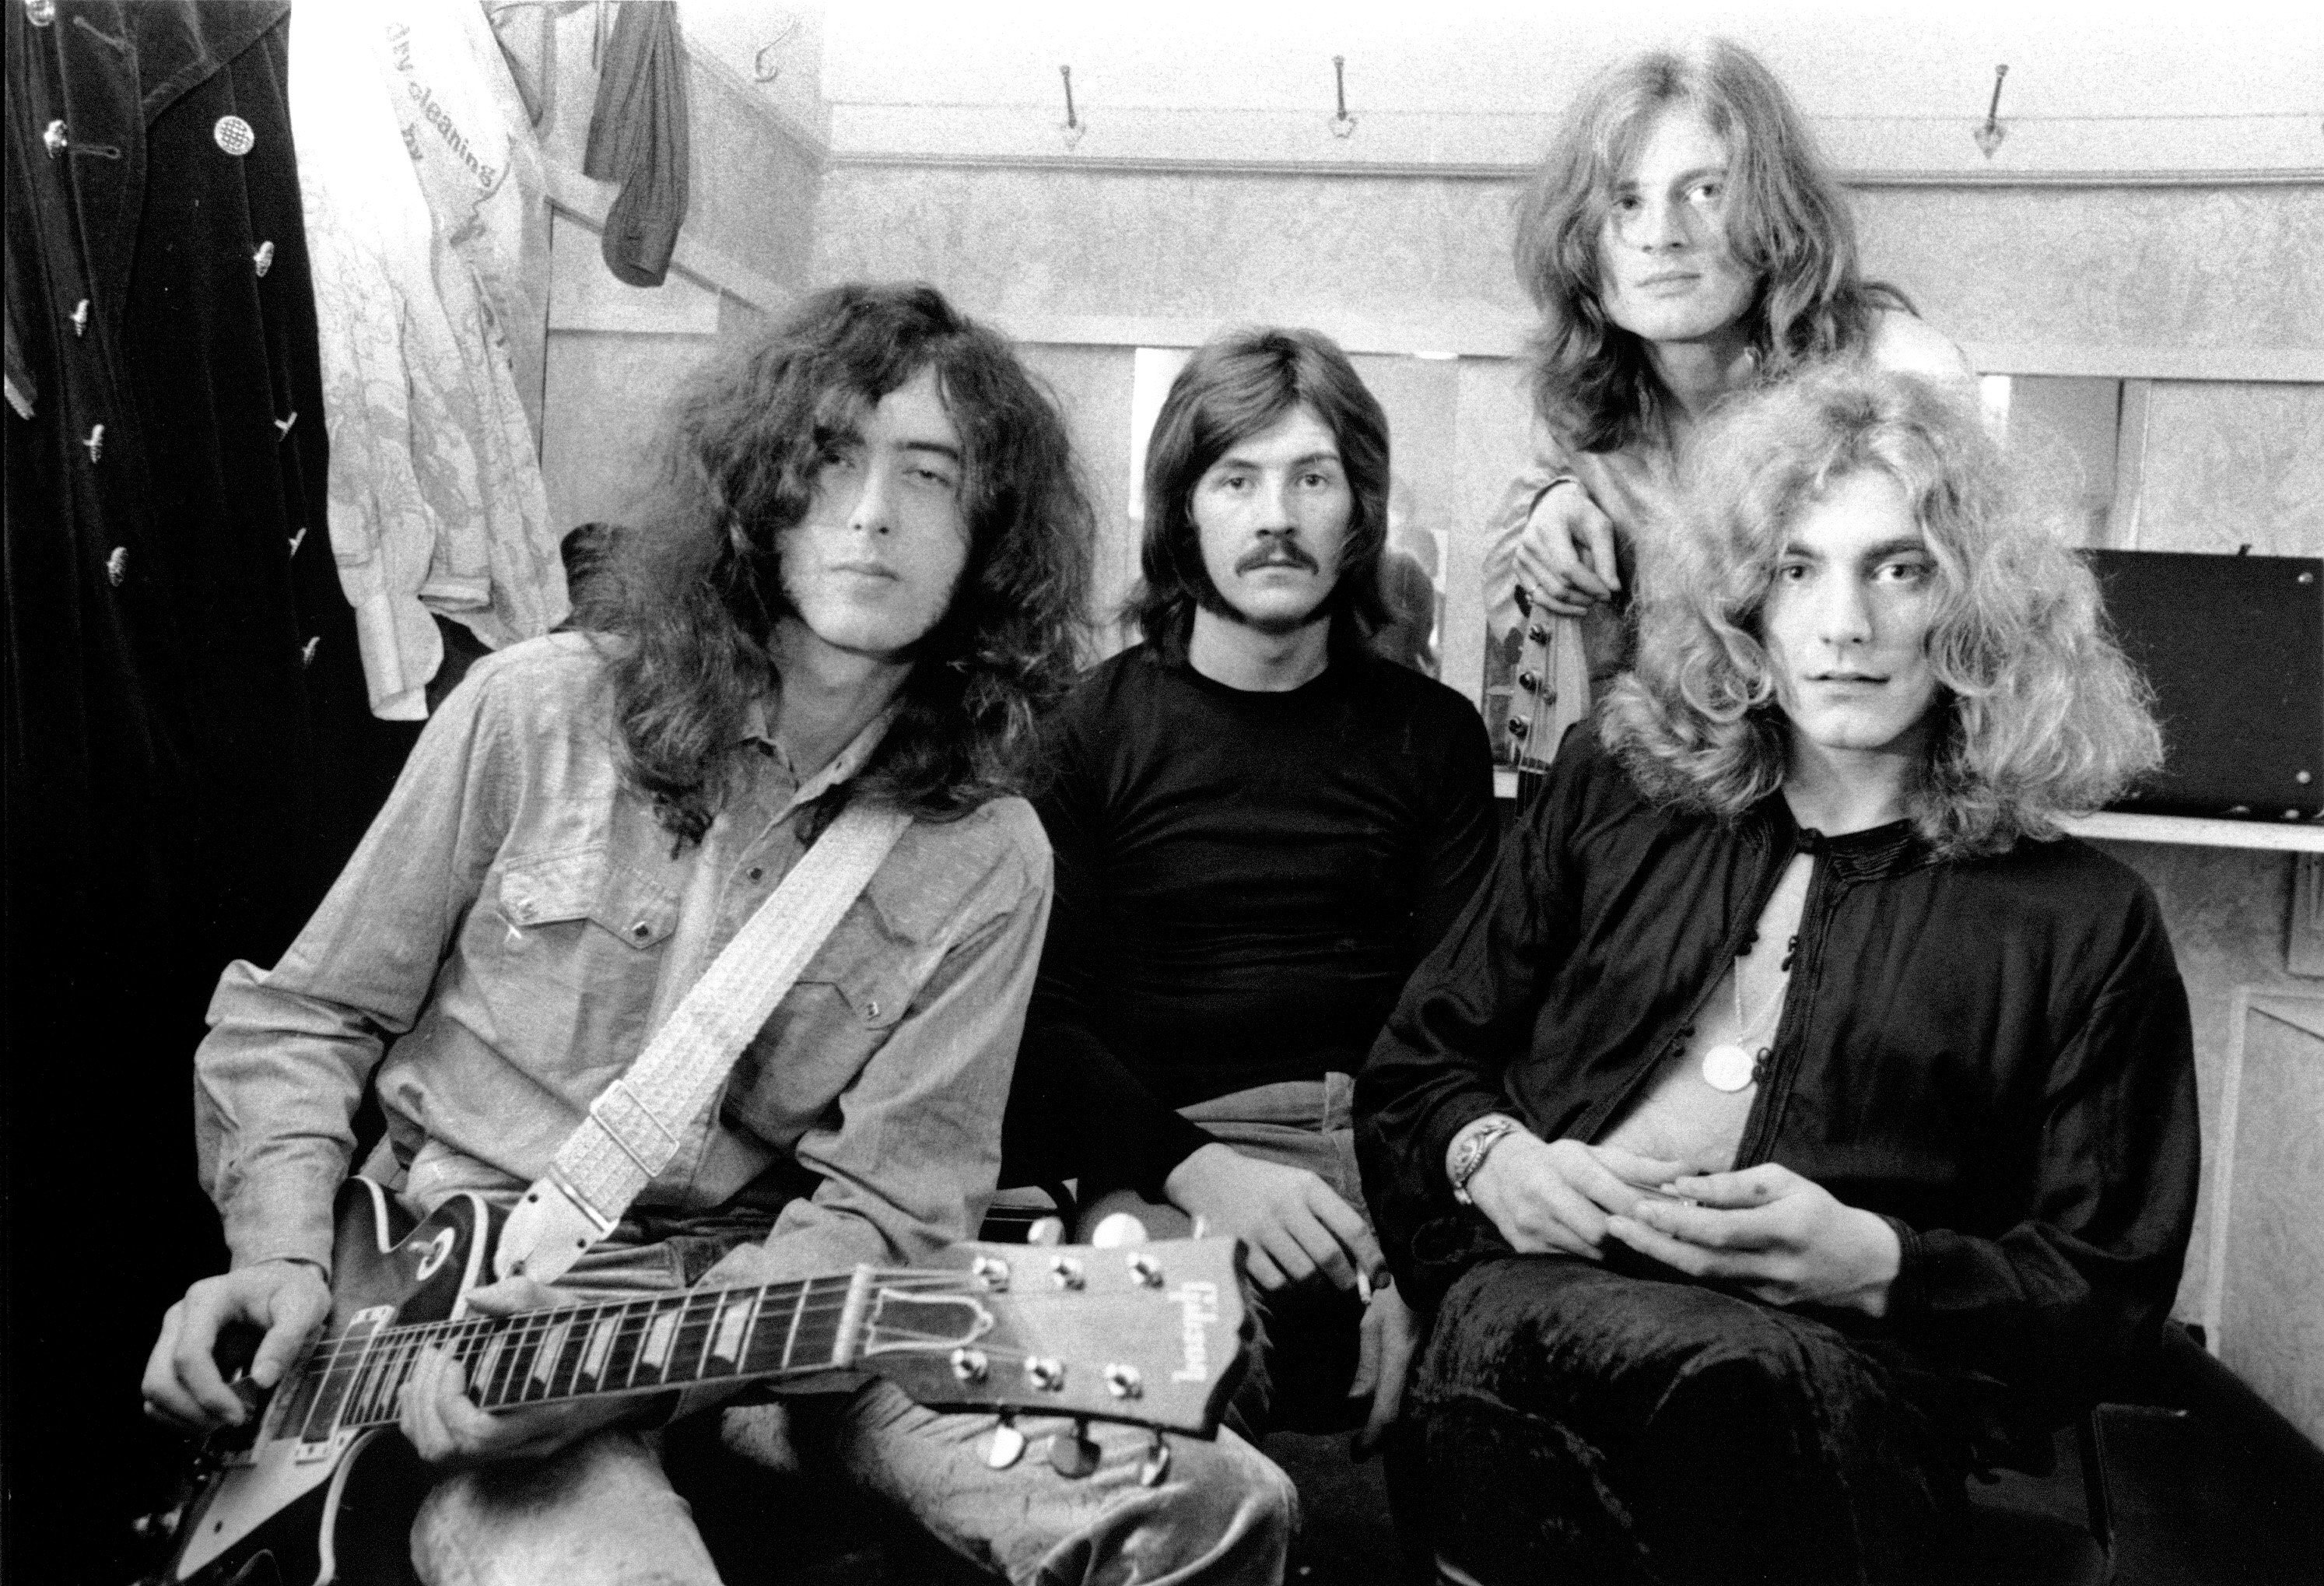 Led Zeppelin members in a row